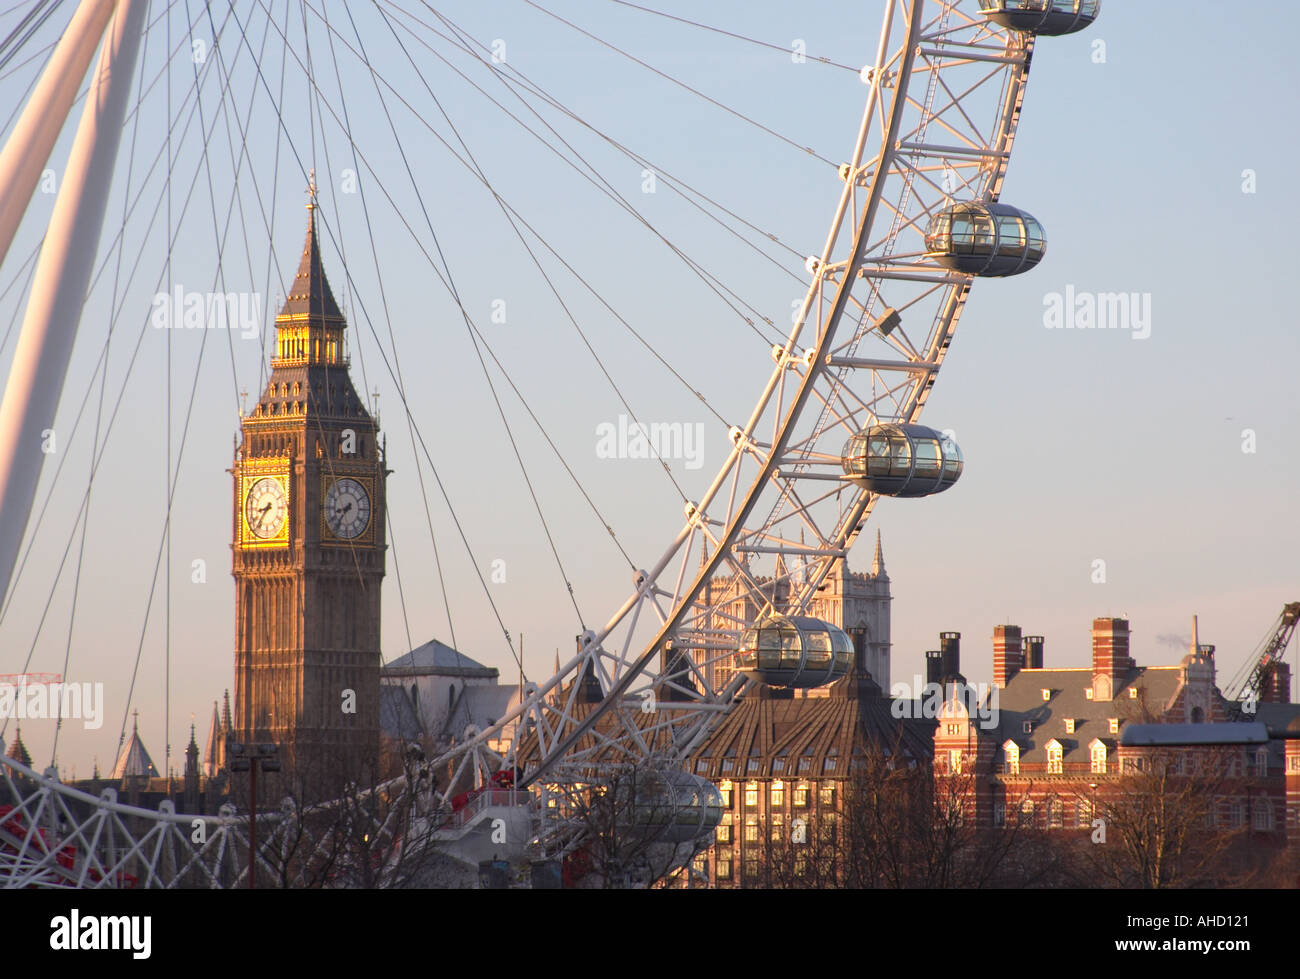 London Eye jour grande roue du millénaire avec Big Ben en arrière-plan le parlement de la Grande-Bretagne Angleterre Londres Royaume-Uni UK Banque D'Images